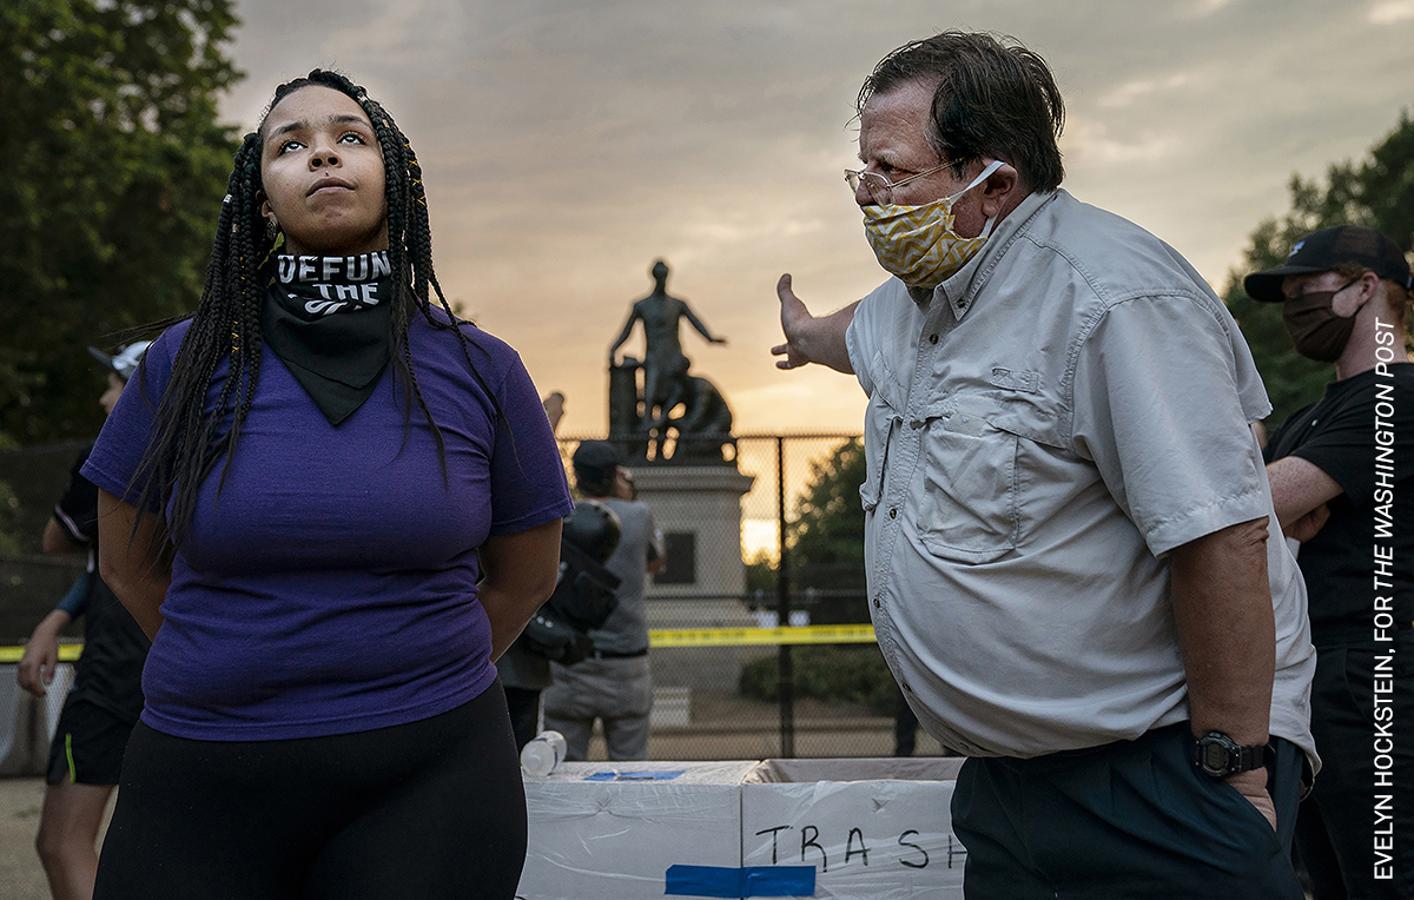 Nominada a mejor fotografía del año. Una joven de color y un hombre blanco discuten por la retirada de una estatua considerada racista en Washington. 